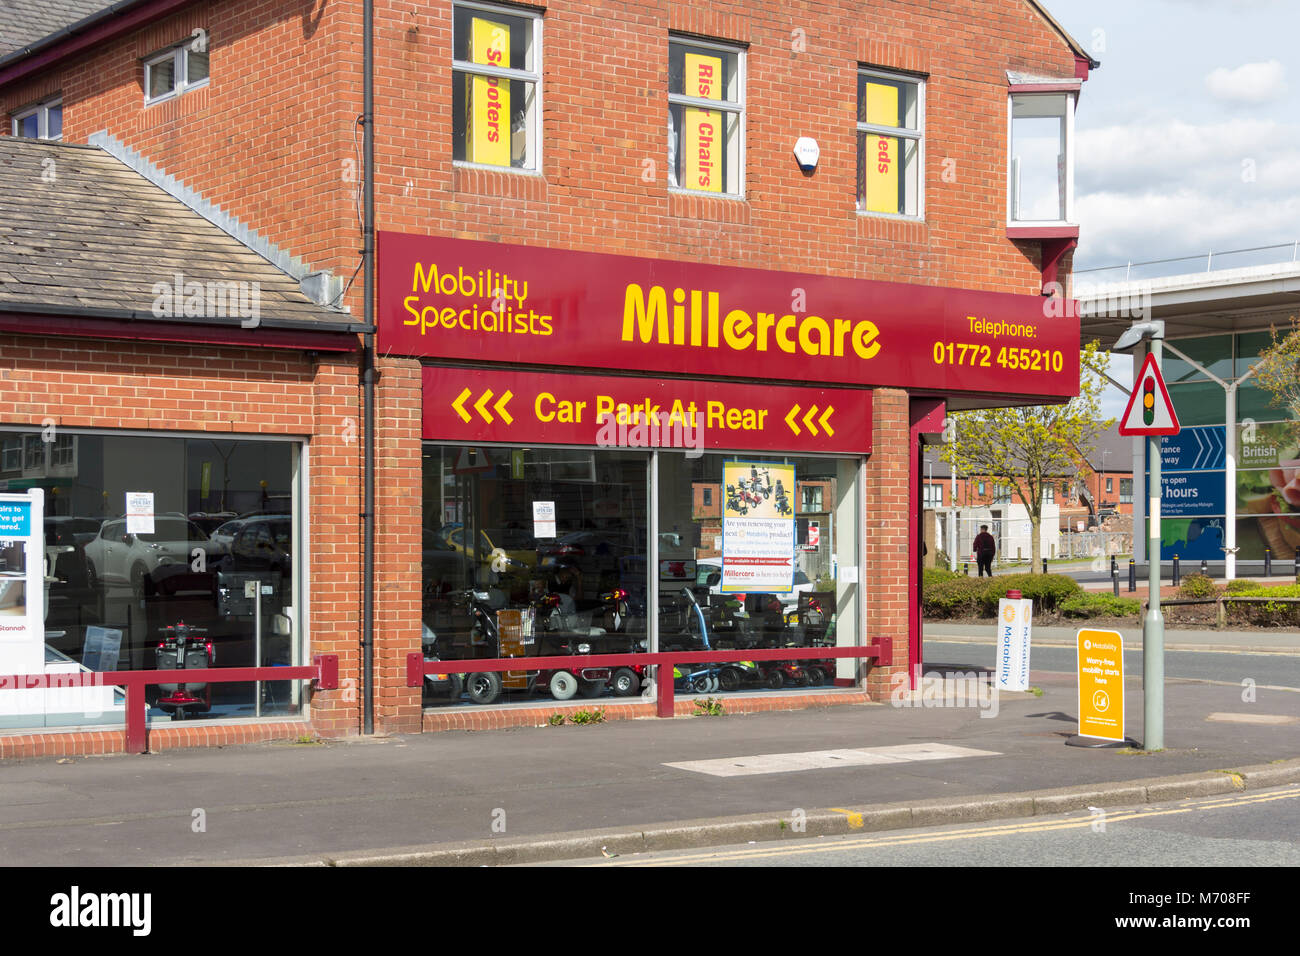 Millercare mobillity y equipo médico tienda especializada, Towngate, Leyland, Lancashire. Son agentes Motability Milercare. Foto de stock